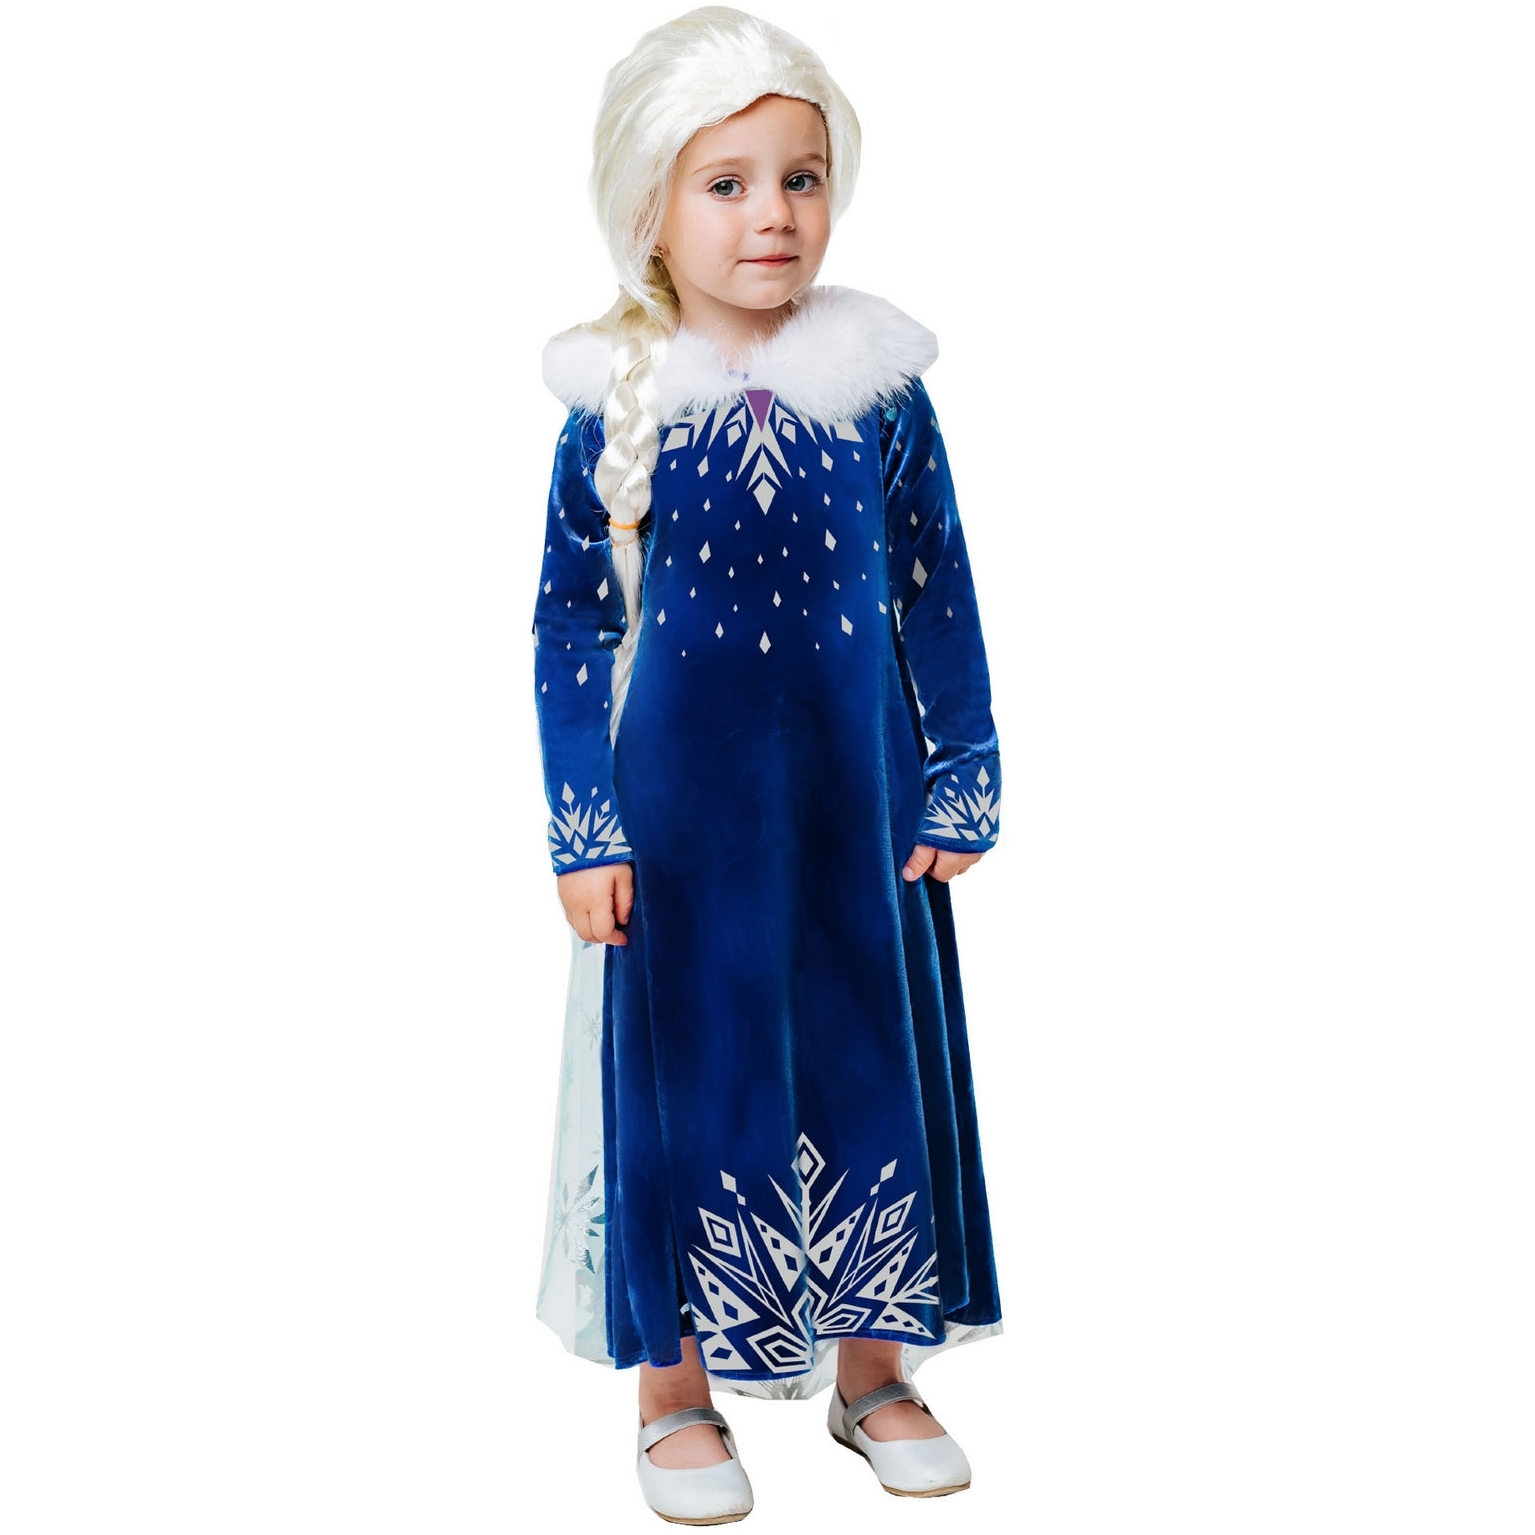 Карнавальный костюм "Эльза зимнее платье" (платье с накидкой, парик) размер 128-64